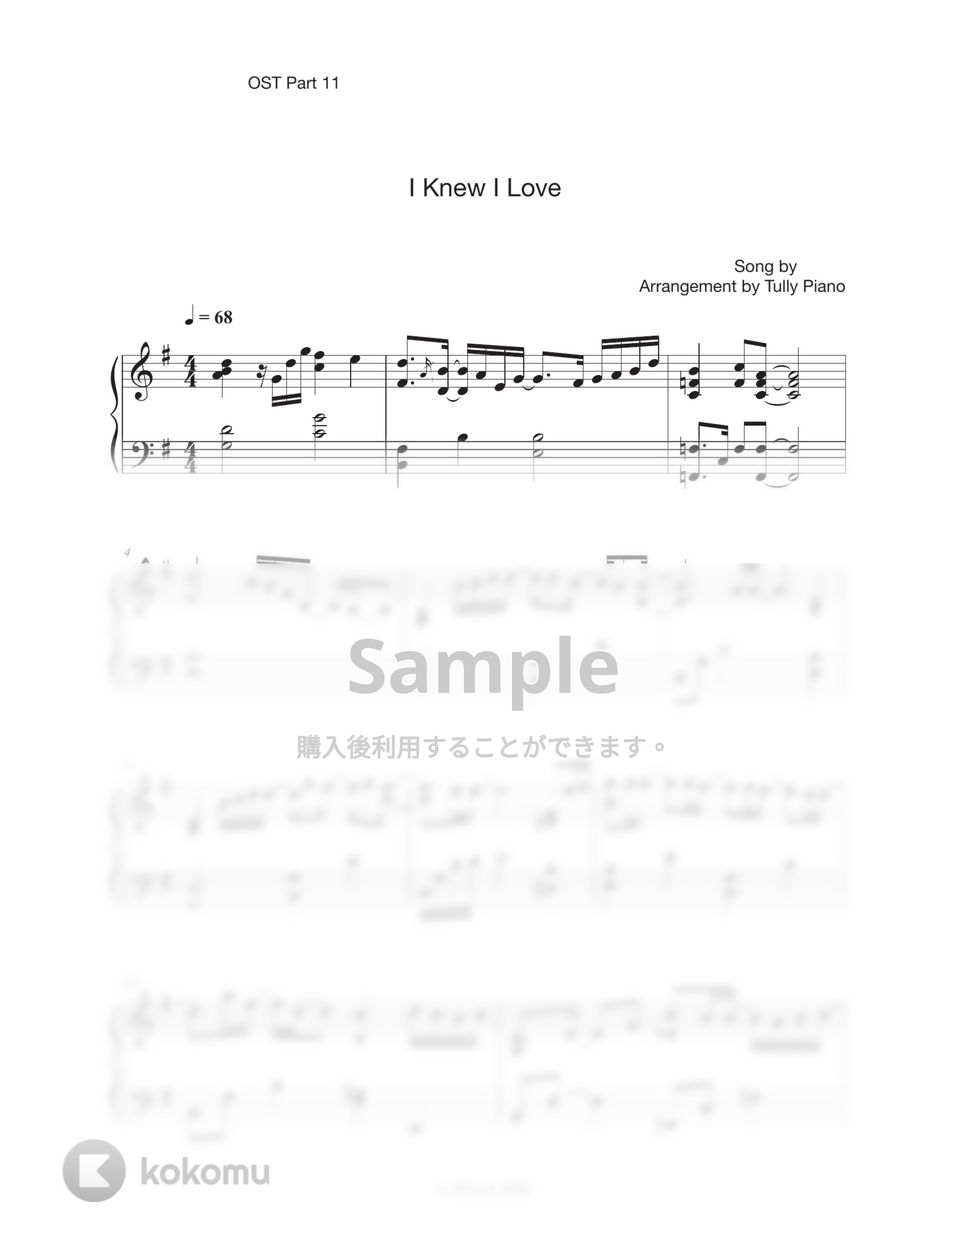 チョン・ミド - 愛するようになると思ってた (ドラマ『賢い医師生活』OST) by Tully Piano